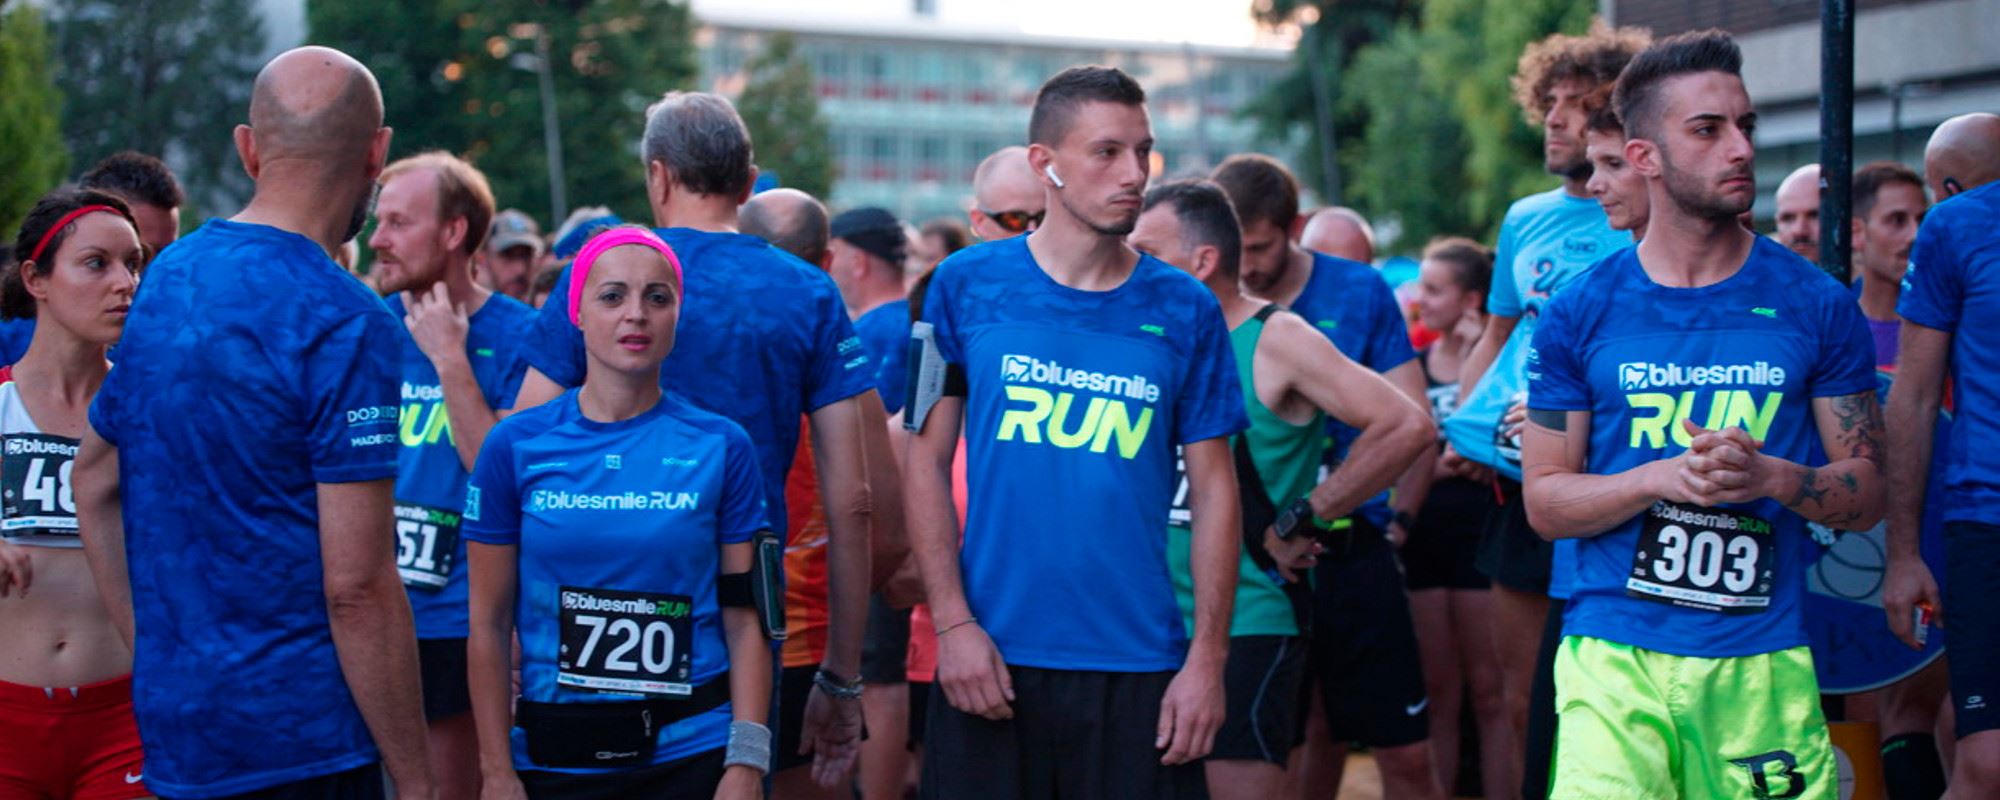 BlueSmile RUN 2018, la corsa in notturna che ha portato 800 runner per le strade di Vimercate!